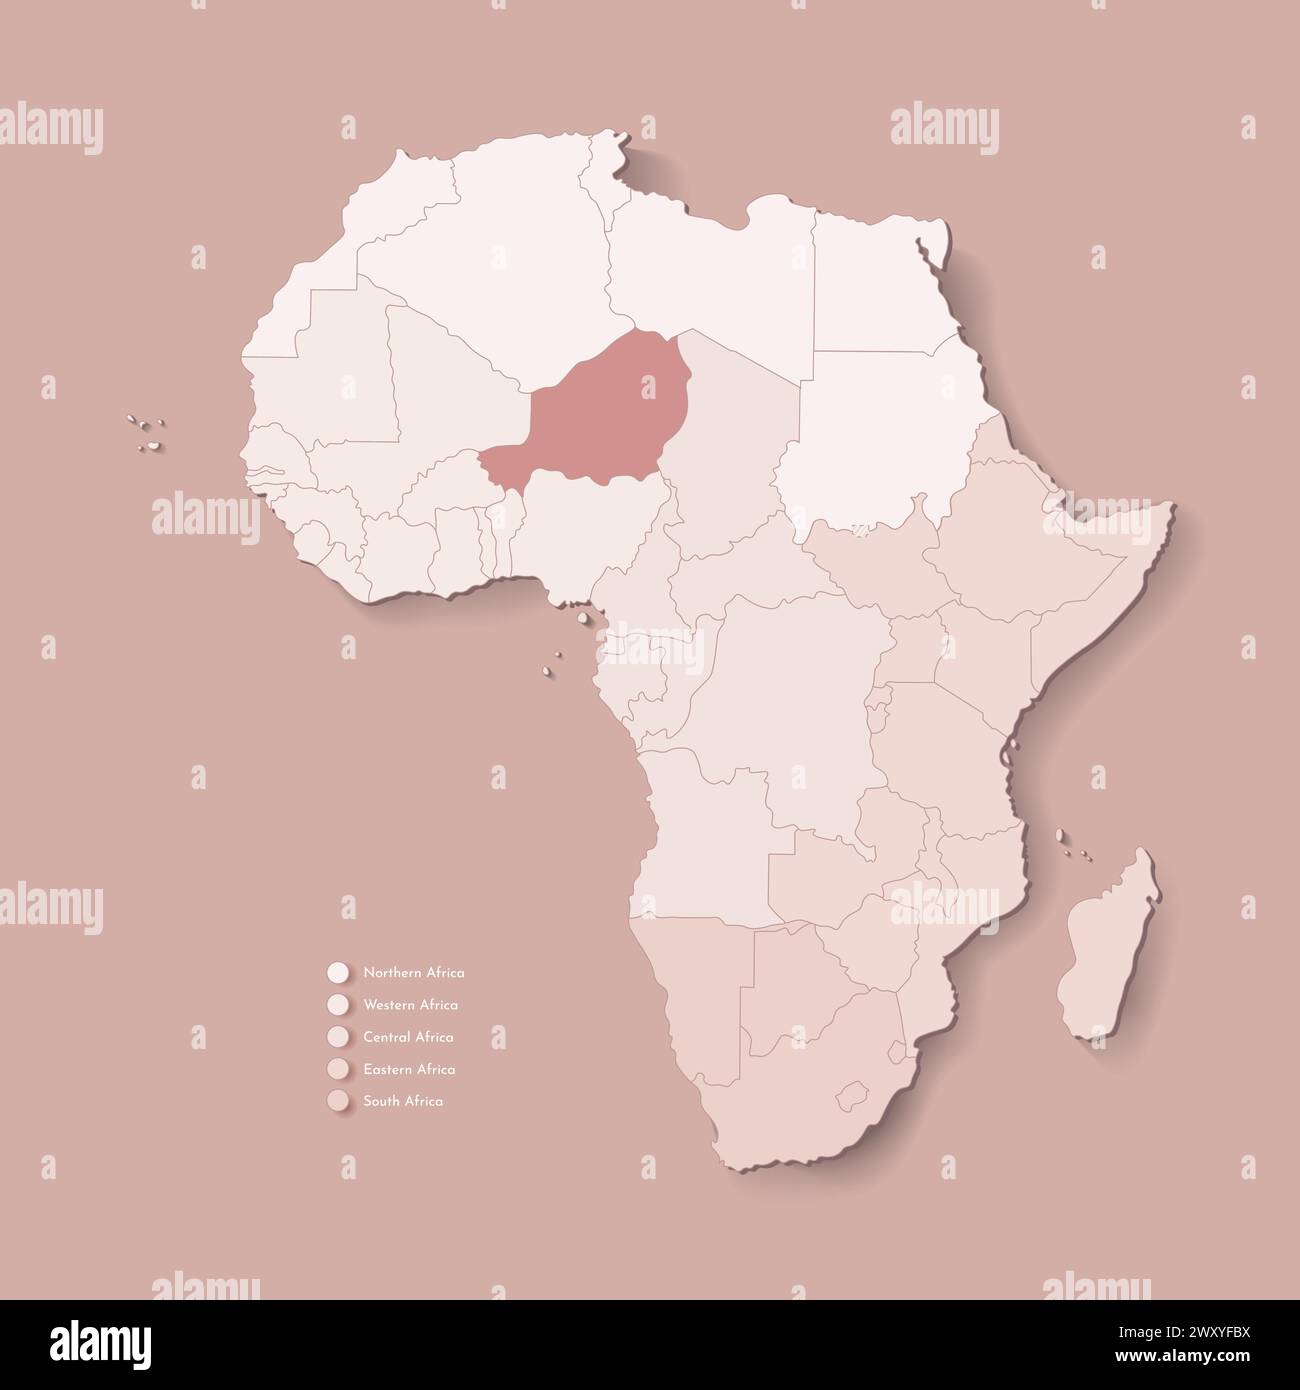 Illustrazione vettoriale con continente africano con confini di tutti gli stati e paese marcato Niger. Mappa politica di colore marrone con occidentale, sud e. Illustrazione Vettoriale